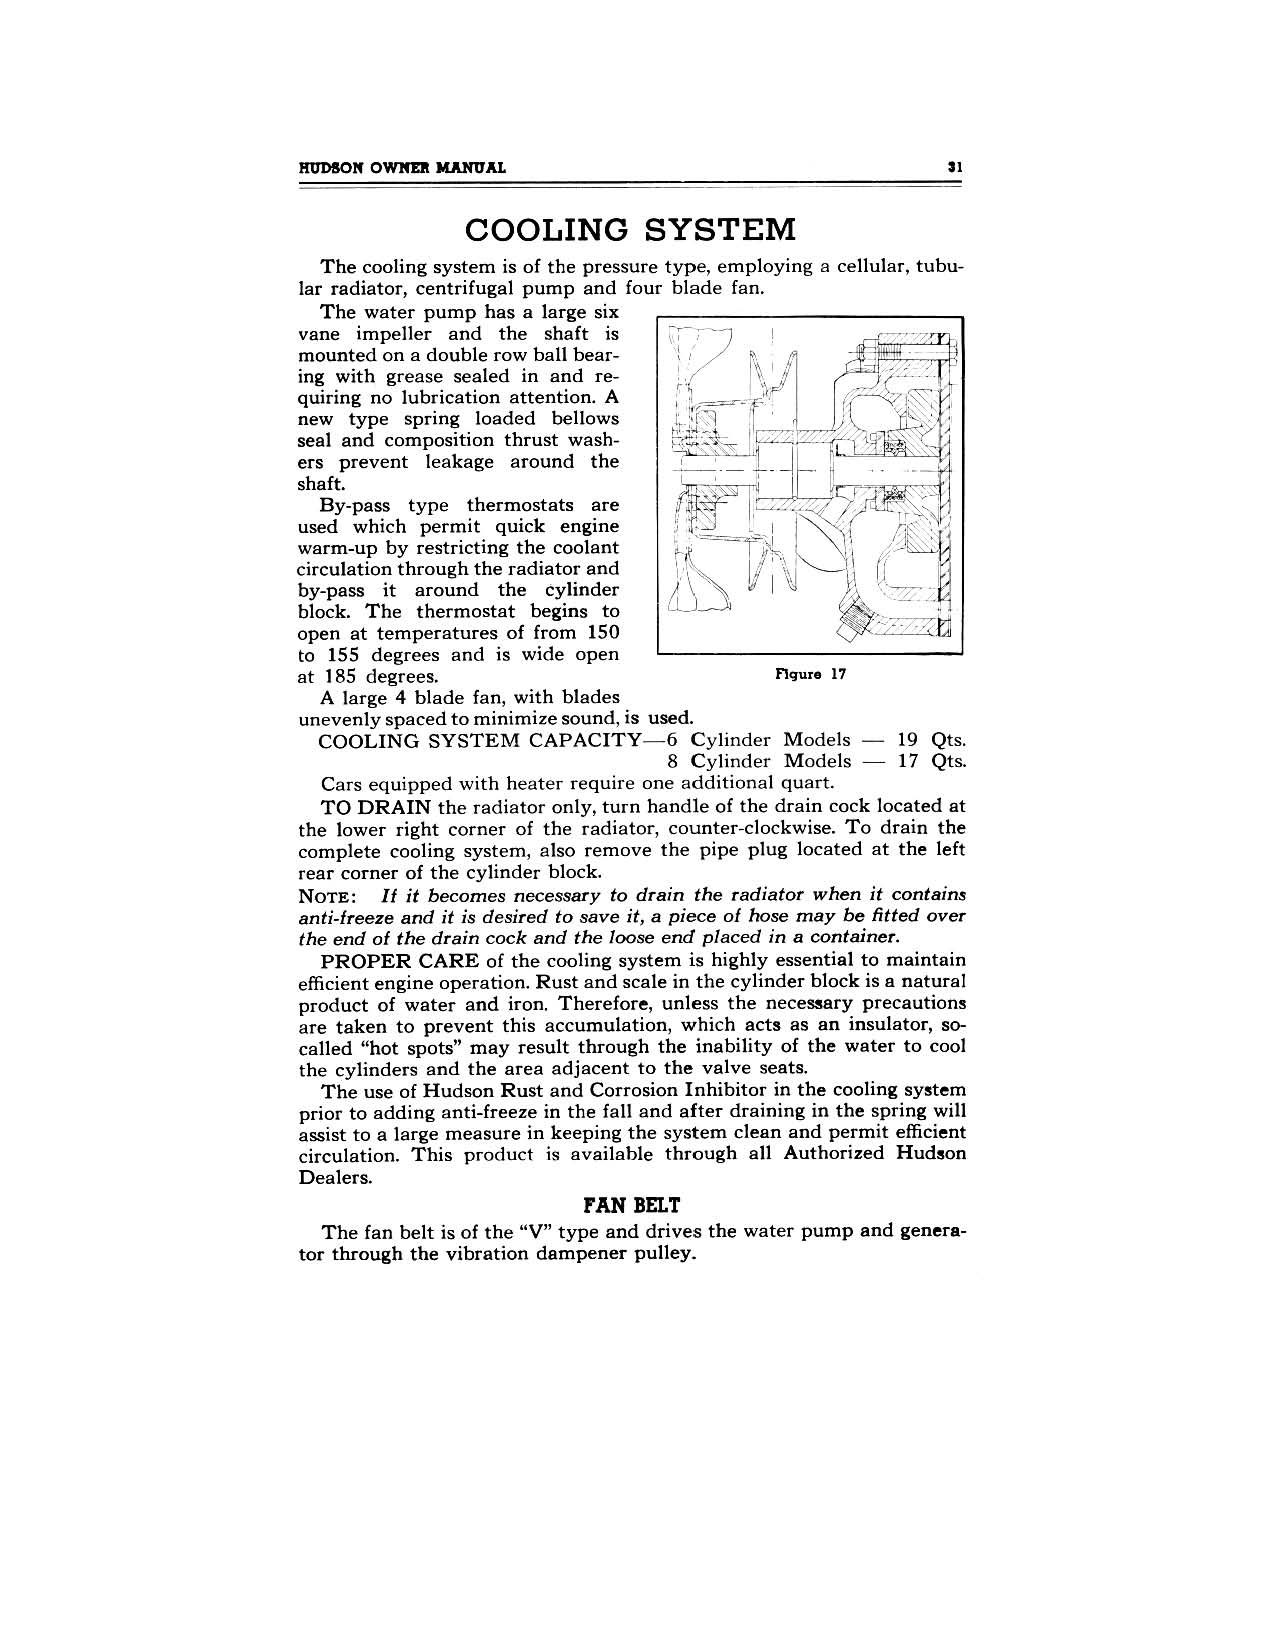 1949 Hudson Owners Manual-33